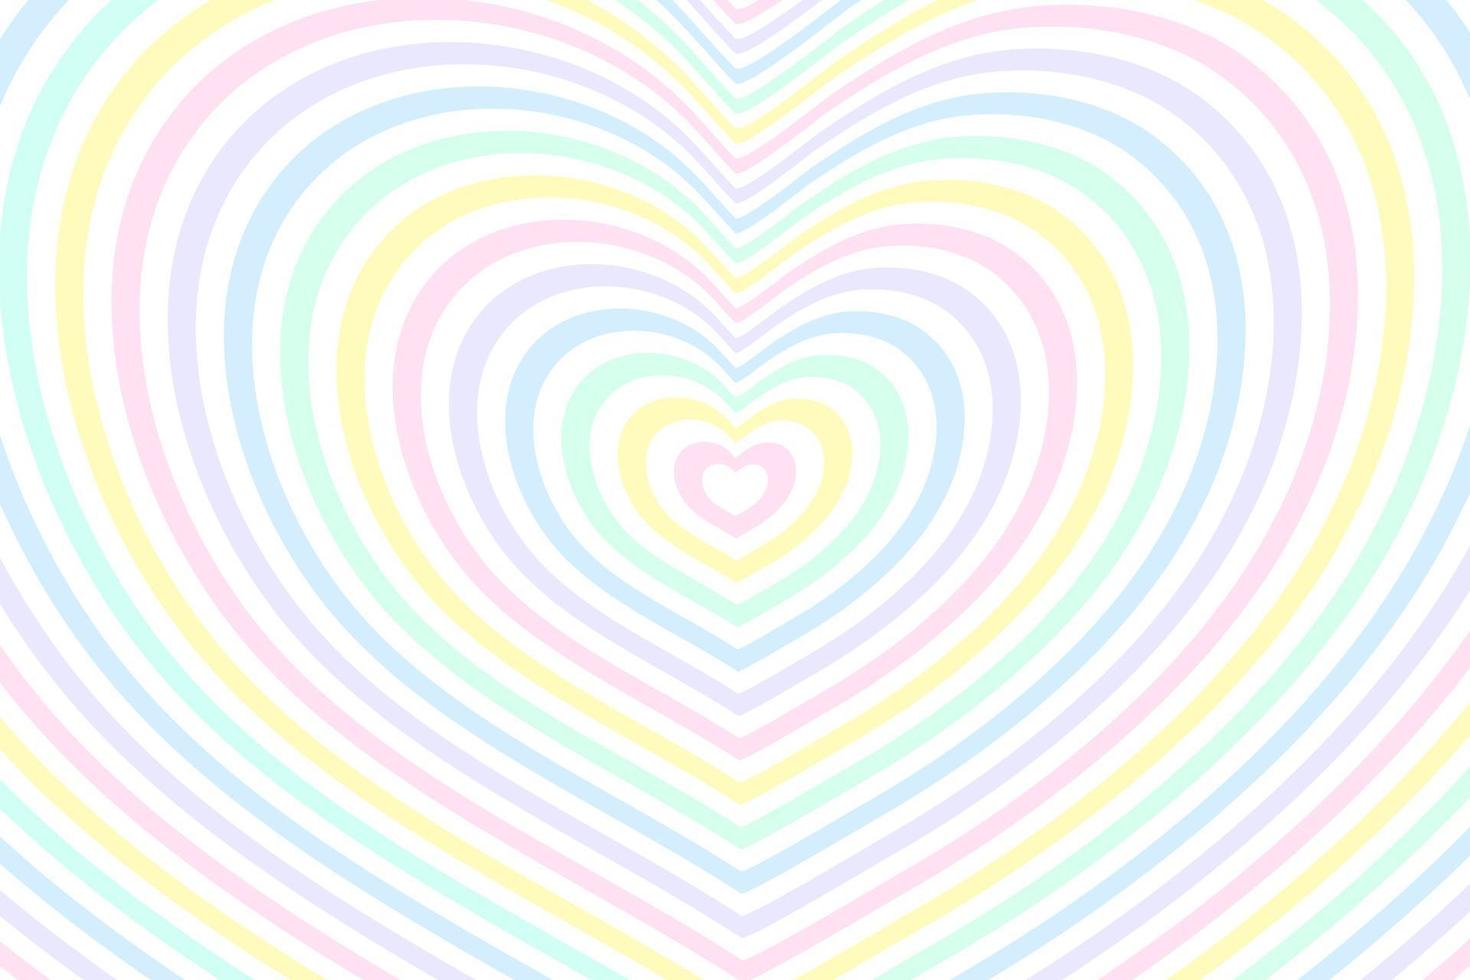 fundo abstrato ilusão de ótica com um coração de arco-íris. vetor. vetor